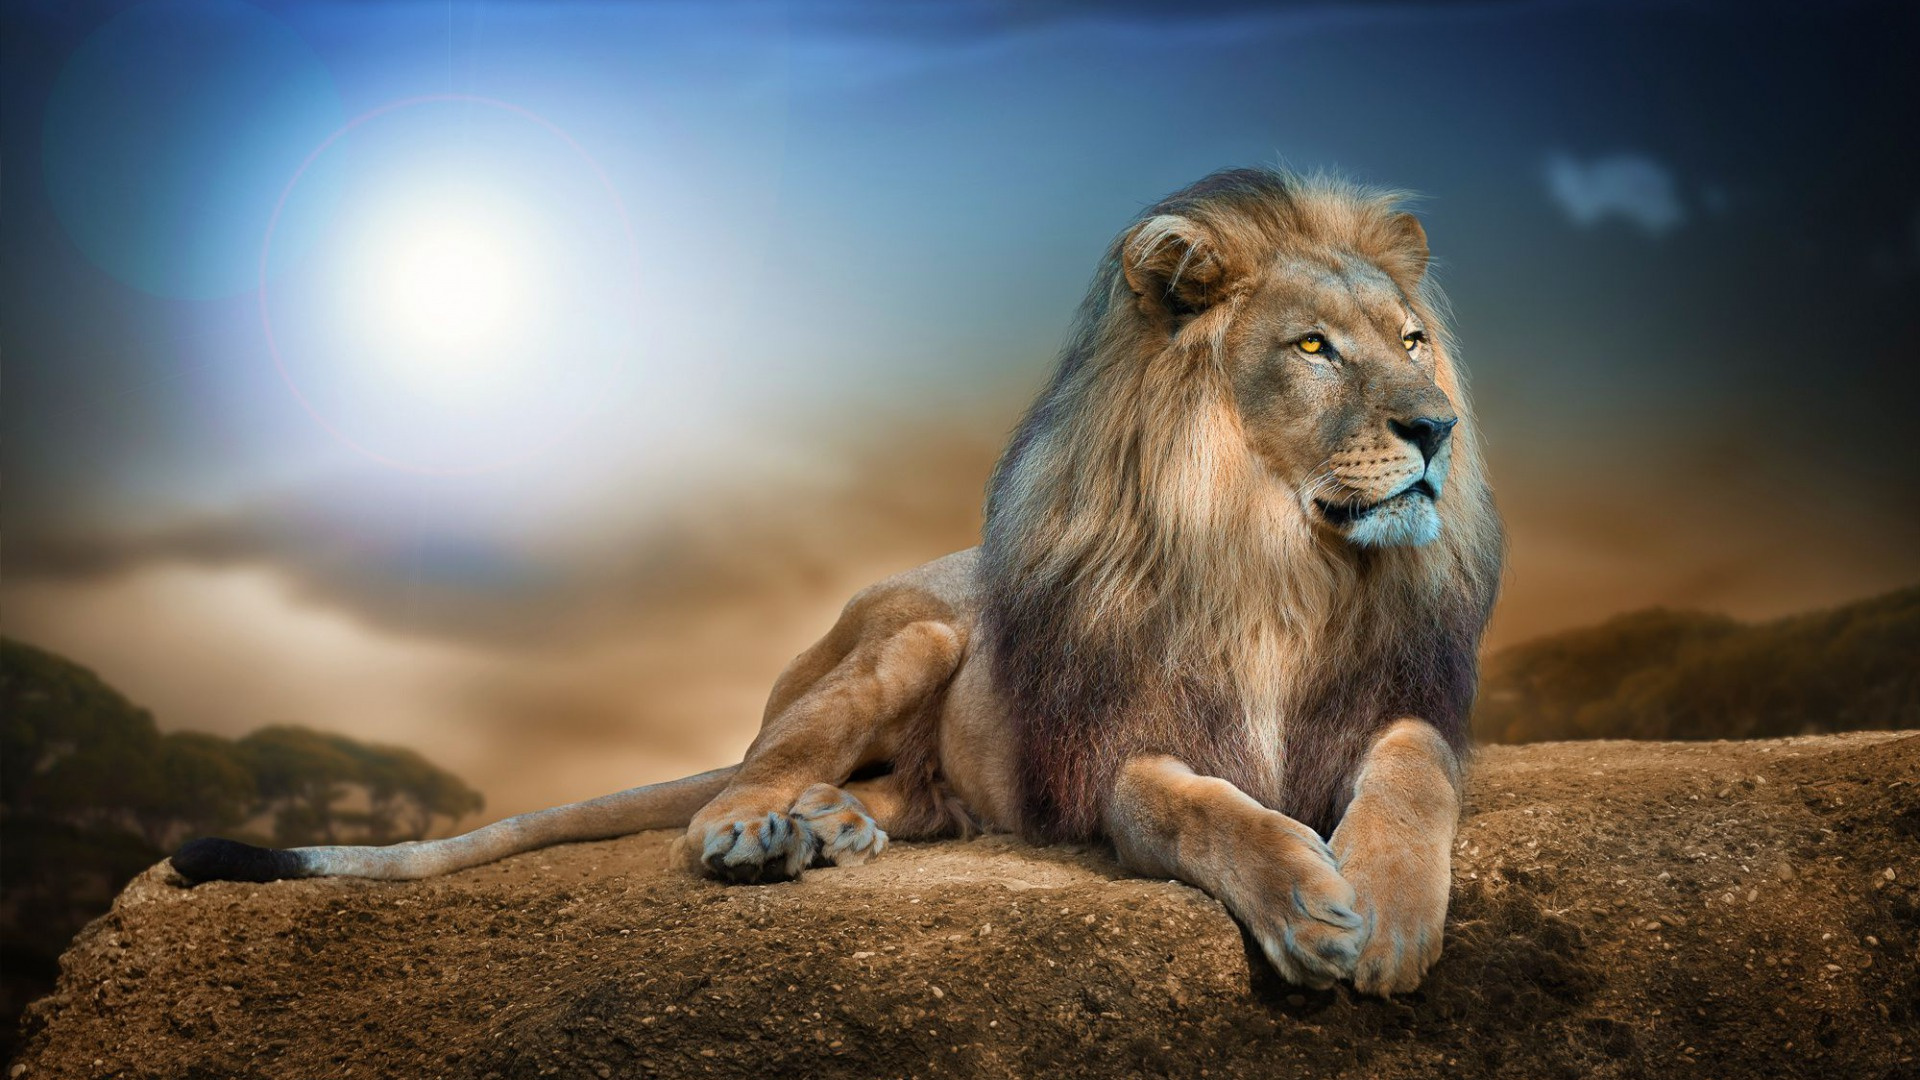 狮子, 野生动物, 猫科, 陆地动物, 马赛马的狮子 壁纸 1920x1080 允许